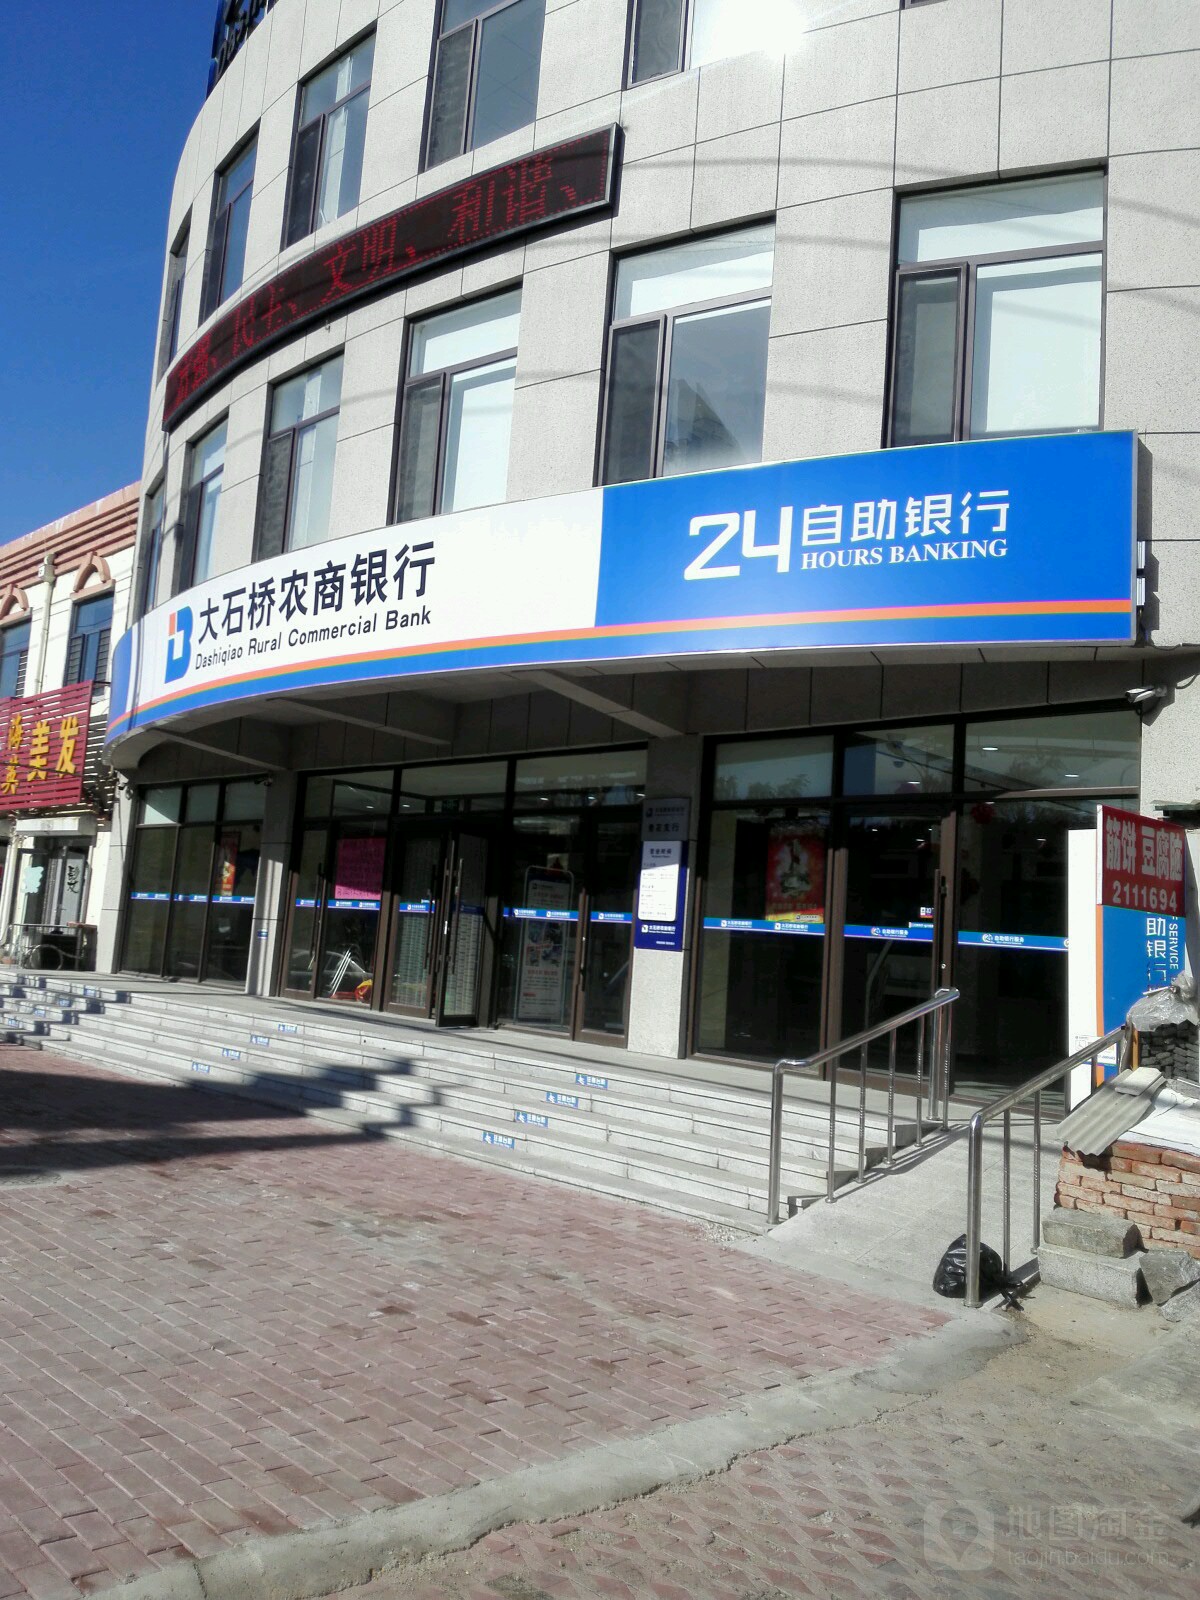 大石橋農商銀行24小時自助銀行服務